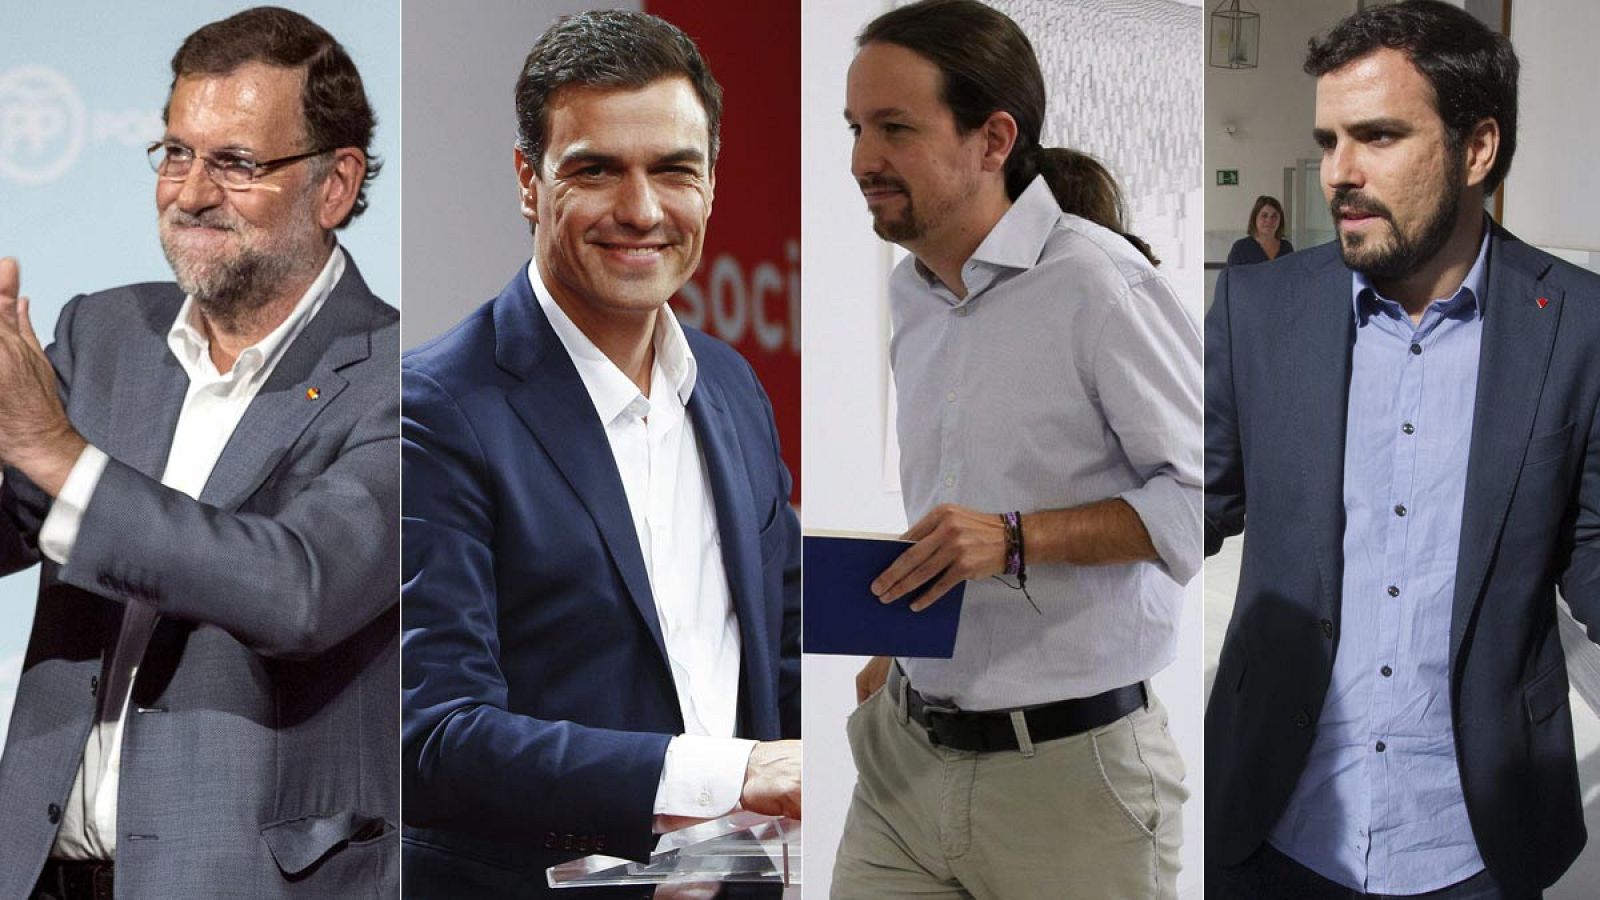 El presidente del PP, Mariano Rajoy; el secretario general del PSOE, Pedro Sánchez; el secretario general de Podemos, Pablo Iglesias, y el candidato de IU a la Presidencia del Gobierno, Alberto Garzón.